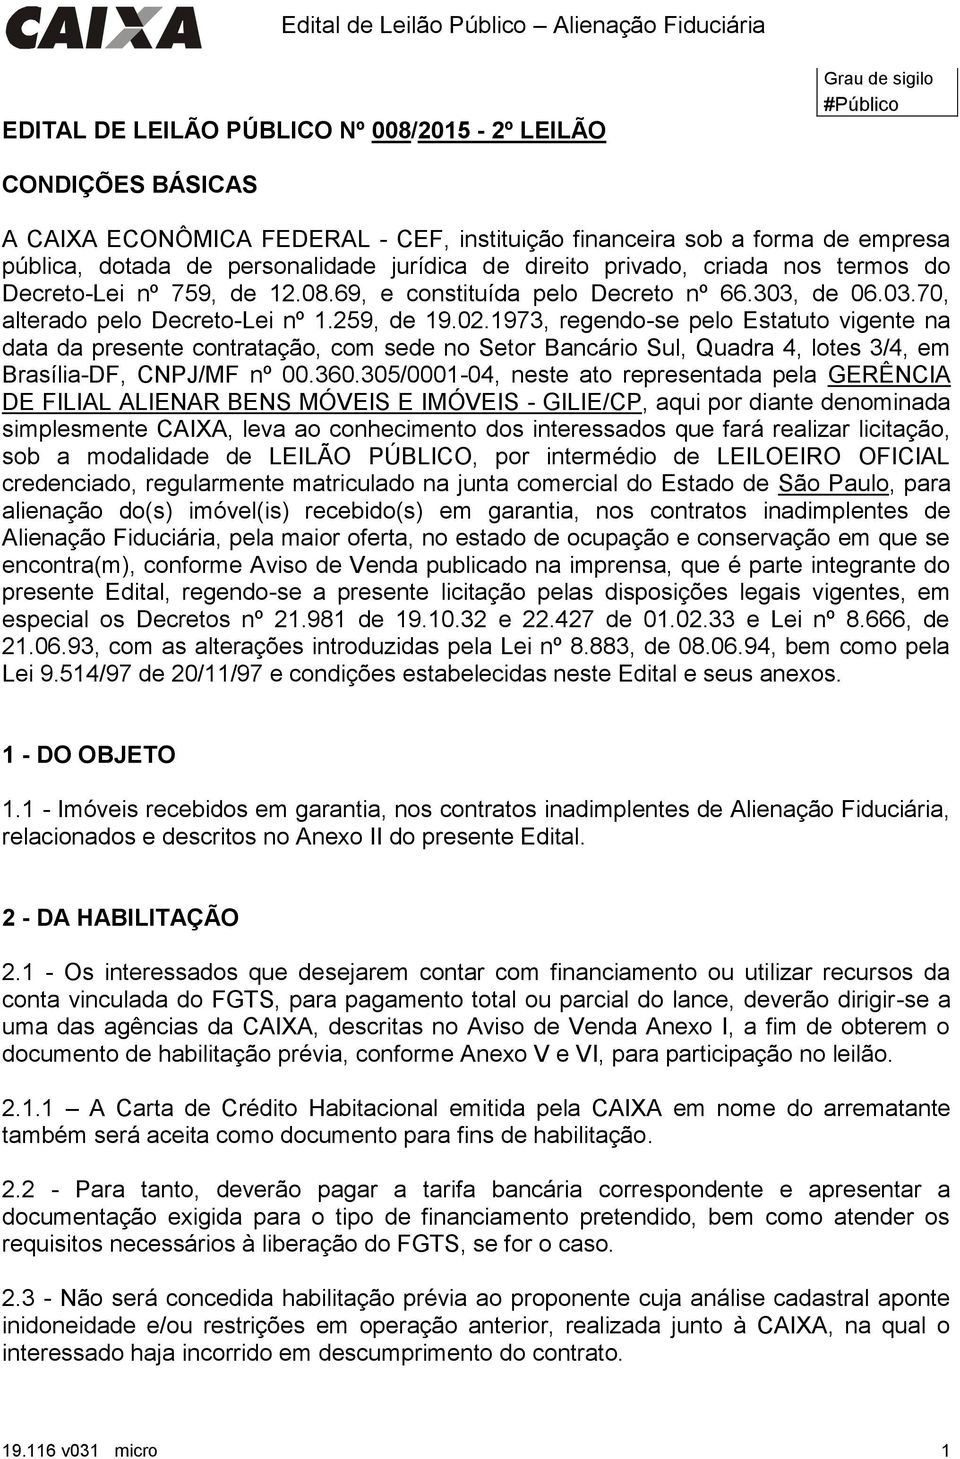 1973, regendo-se pelo Estatuto vigente na data da presente contratação, com sede no Setor Bancário Sul, Quadra 4, lotes 3/4, em Brasília-DF, CNPJ/MF nº 00.360.